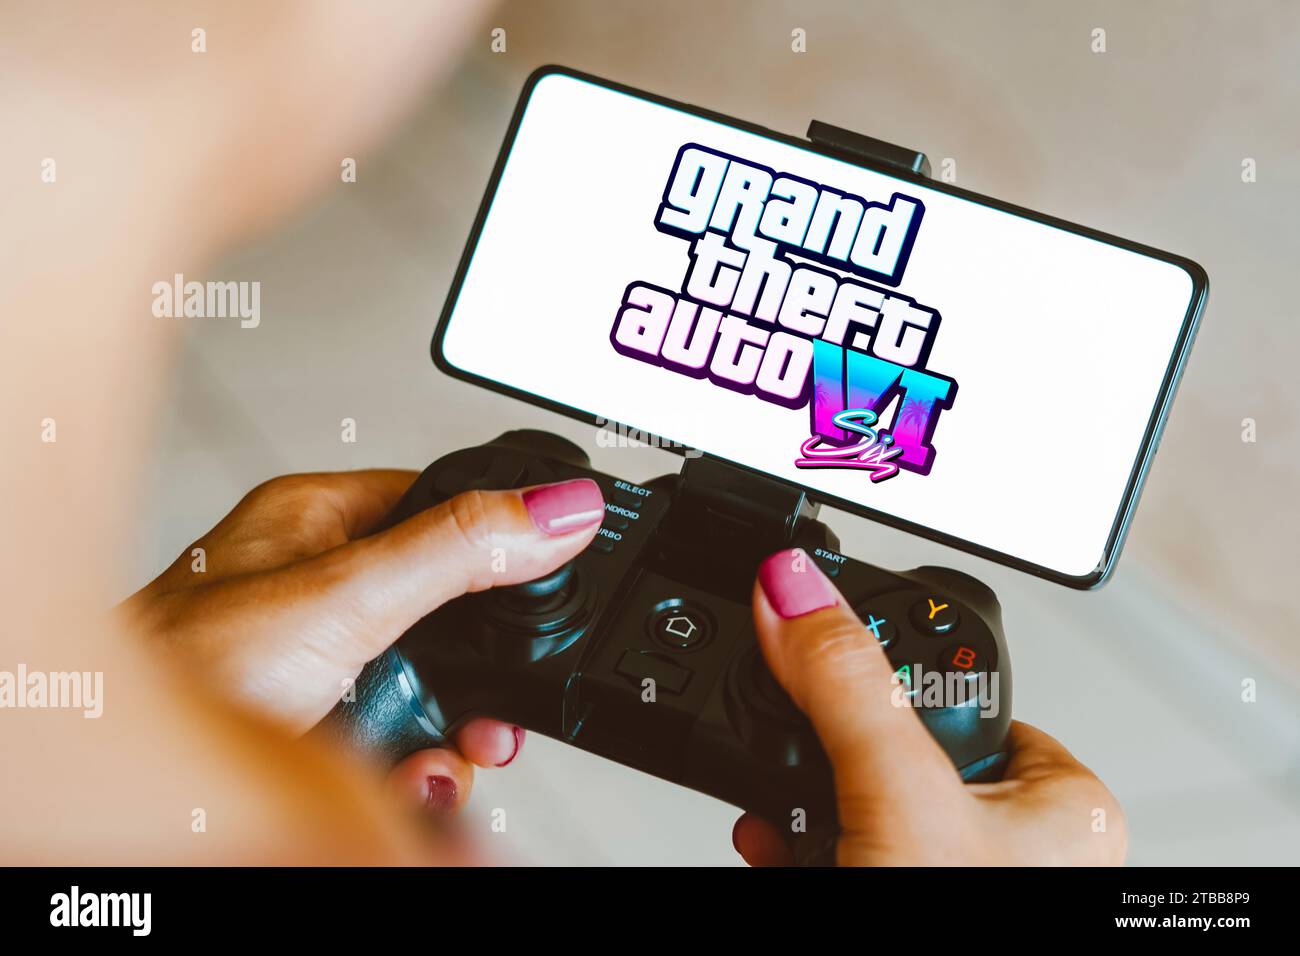 Brasilien. Dezember 2023. In dieser Fotoabbildung wird das Grand Theft Auto VI (GTA 6) Logo auf einem Smartphone-Bildschirm angezeigt, während eine Person auf einem Gaming-Gamepad spielt. Quelle: SOPA Images Limited/Alamy Live News Stockfoto